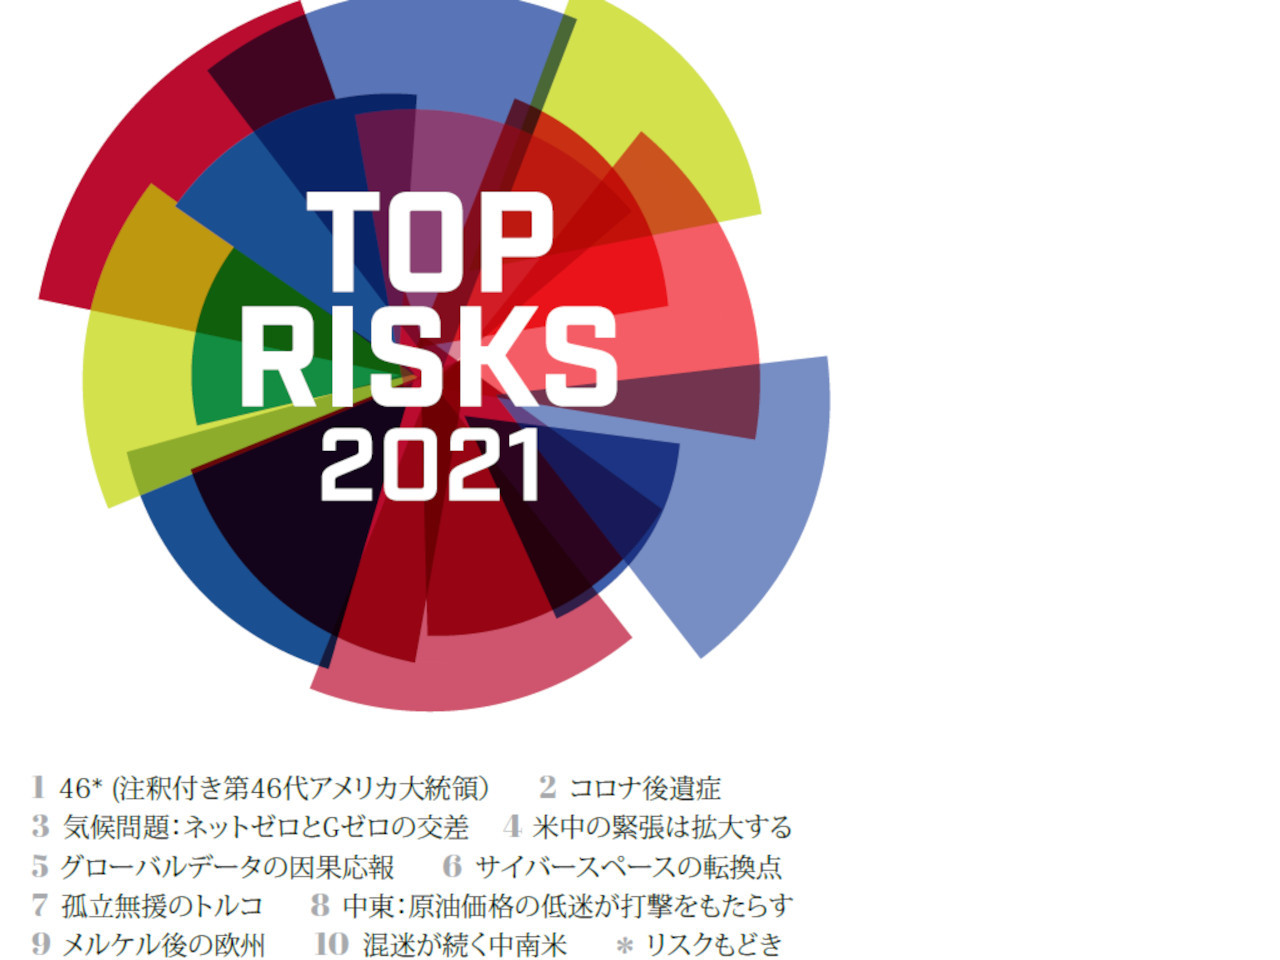 日本の行政・企業はデジタルの地政学的リスクを注視せよ